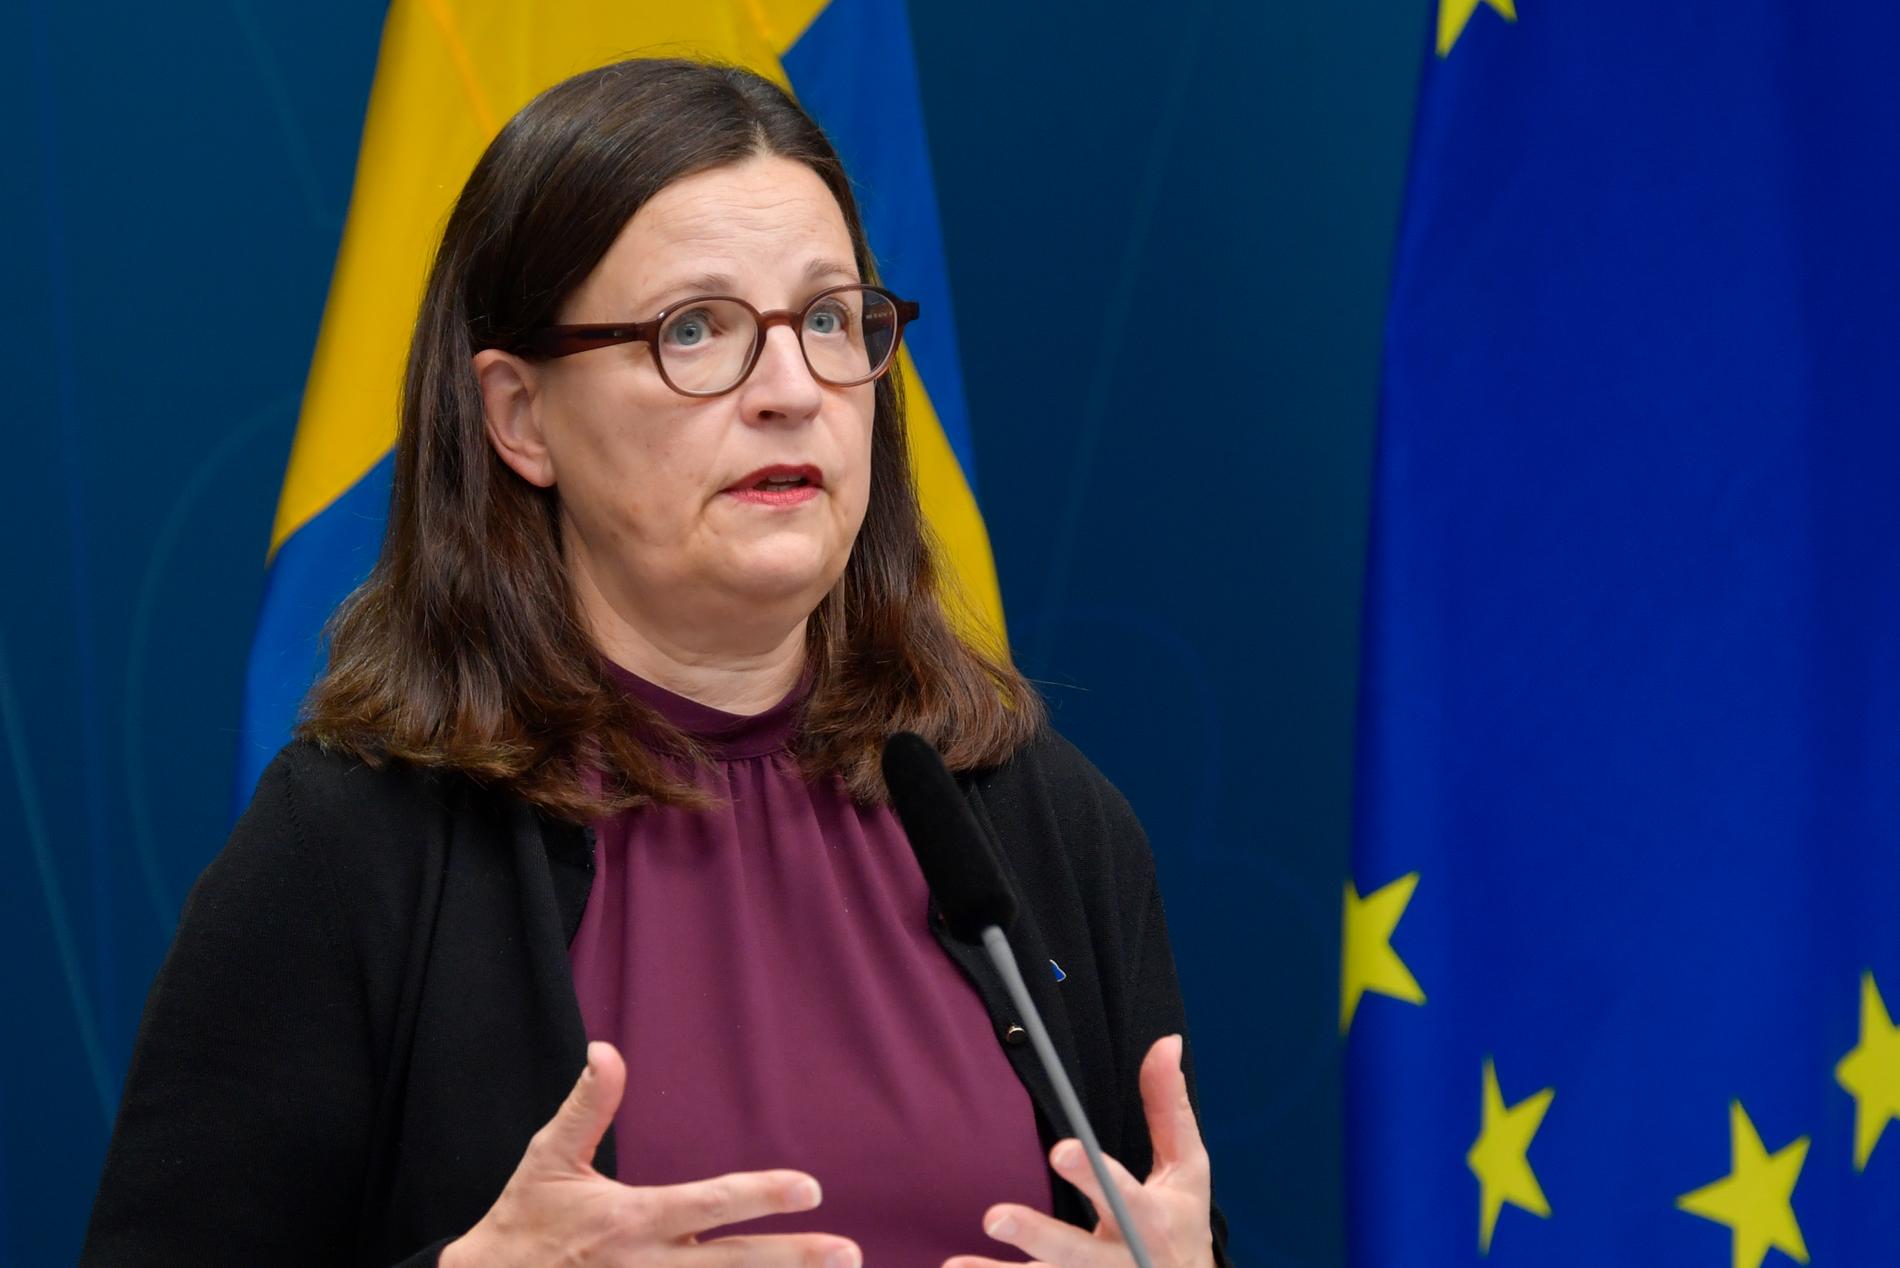 En tillfällig lösning återställer tillgången till uppgifter om skolor, enligt utbildningsminister Anna Ekström (S).